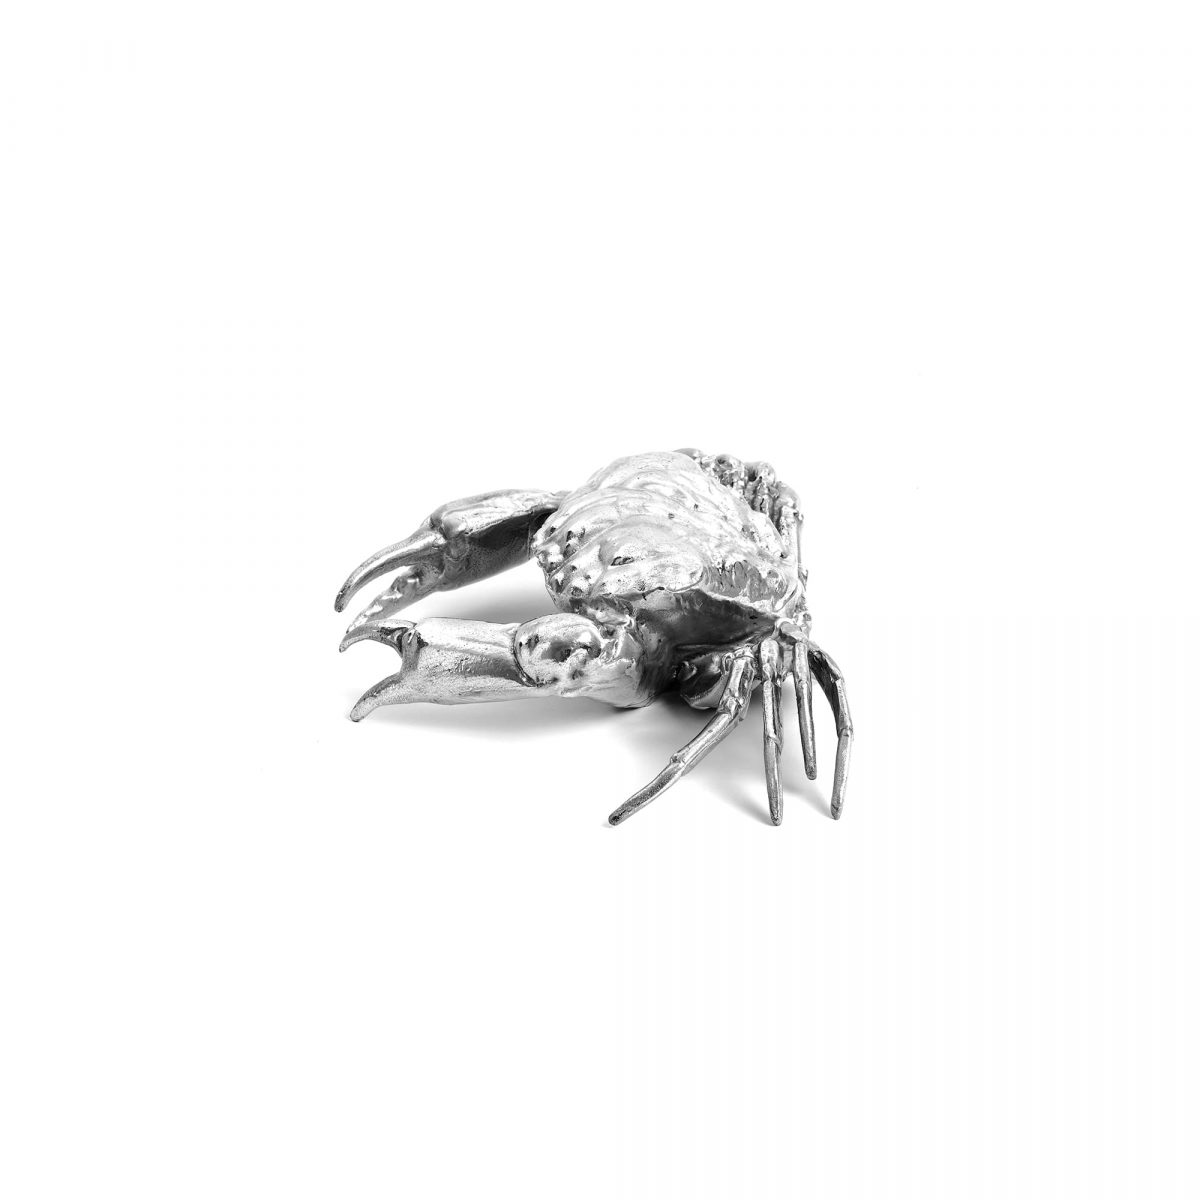 SELETTI DIESEL Wunderkrammer Crab